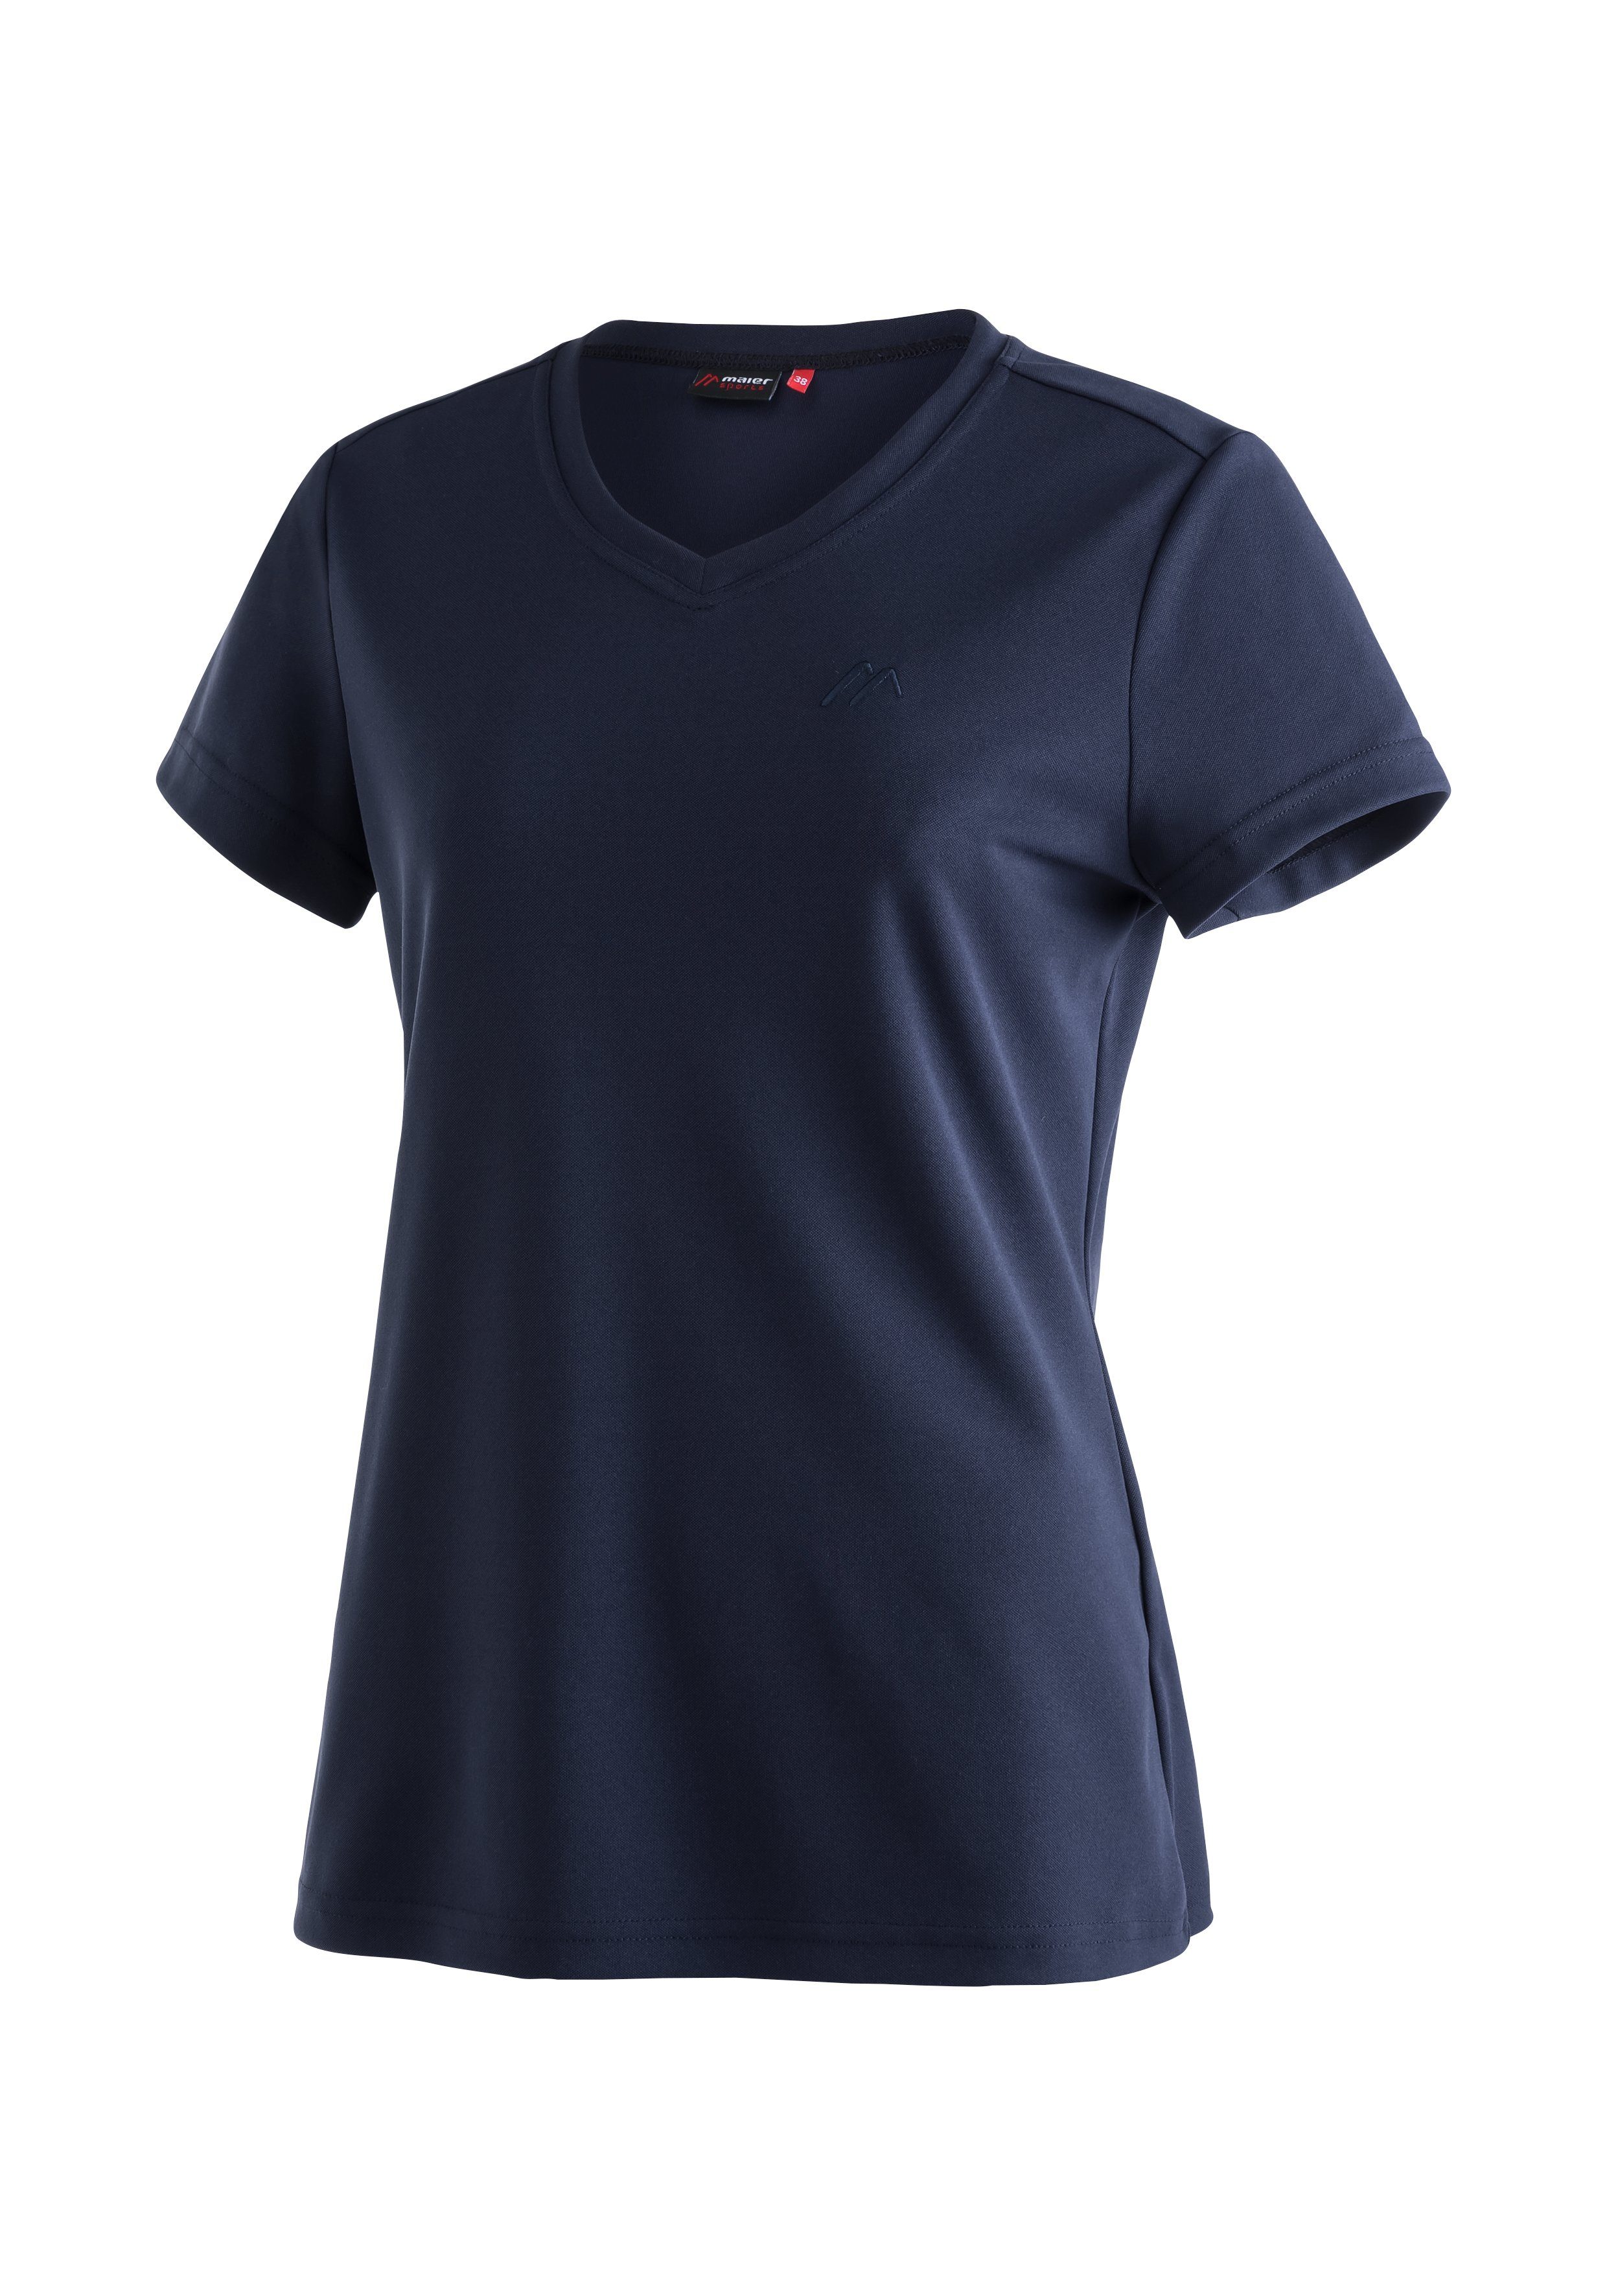 Wandern T-Shirt, Kurzarmshirt Freizeit Funktionsshirt Maier dunkelblau Damen Sports und für Trudy